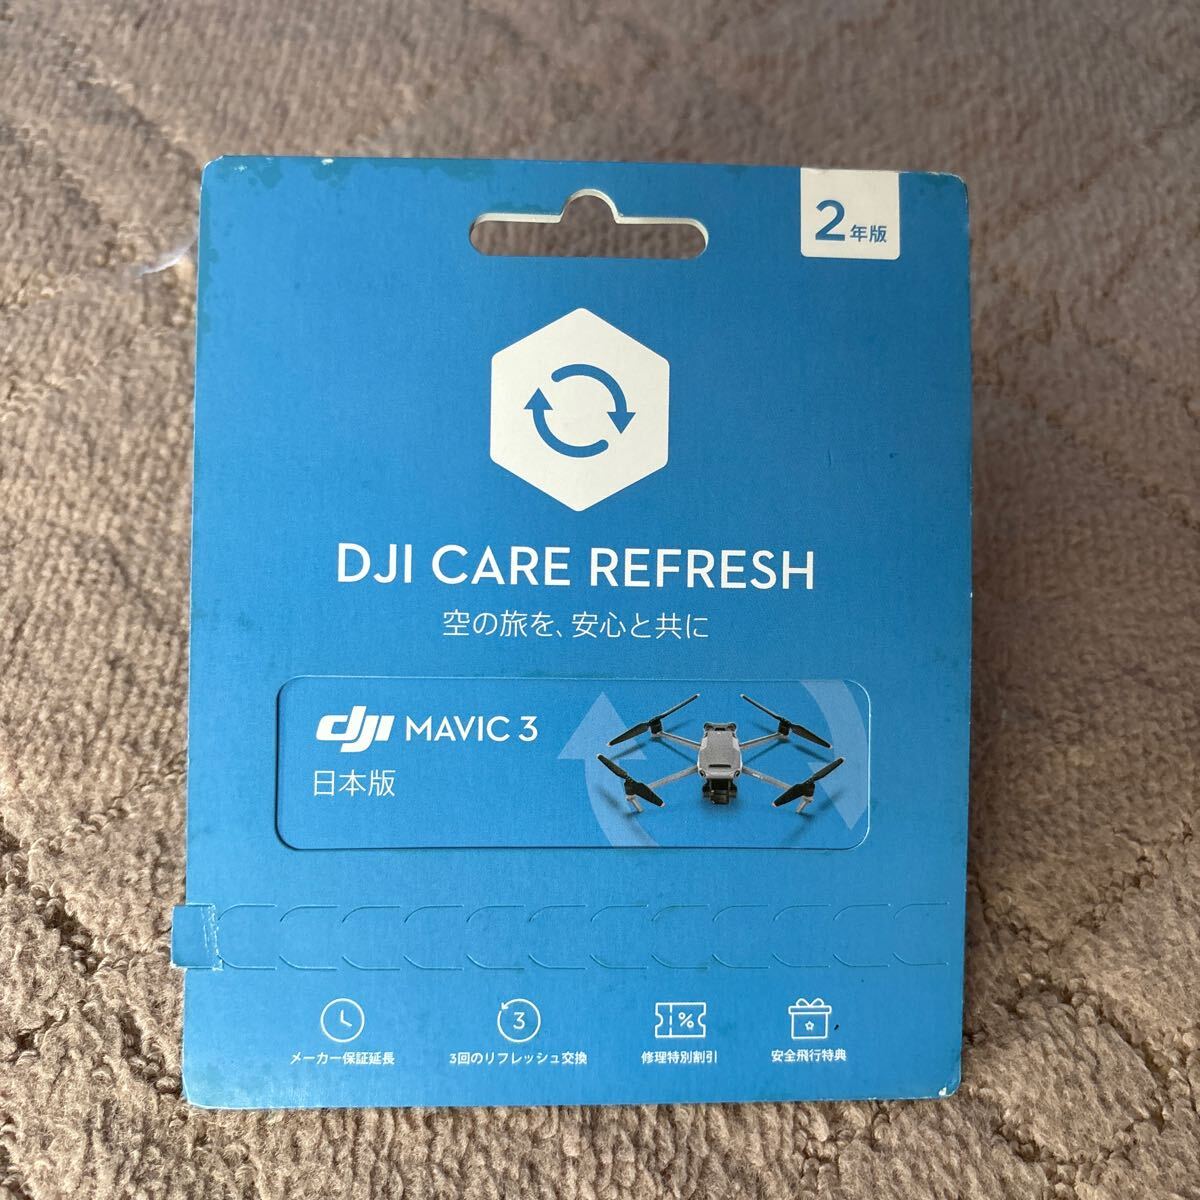 【新品未使用】DJI Mavic3 Flymoreコンボ DJI-RC DJI CareRefresh2年版 プロペラガード 専用ハードケース他 おまけ付き